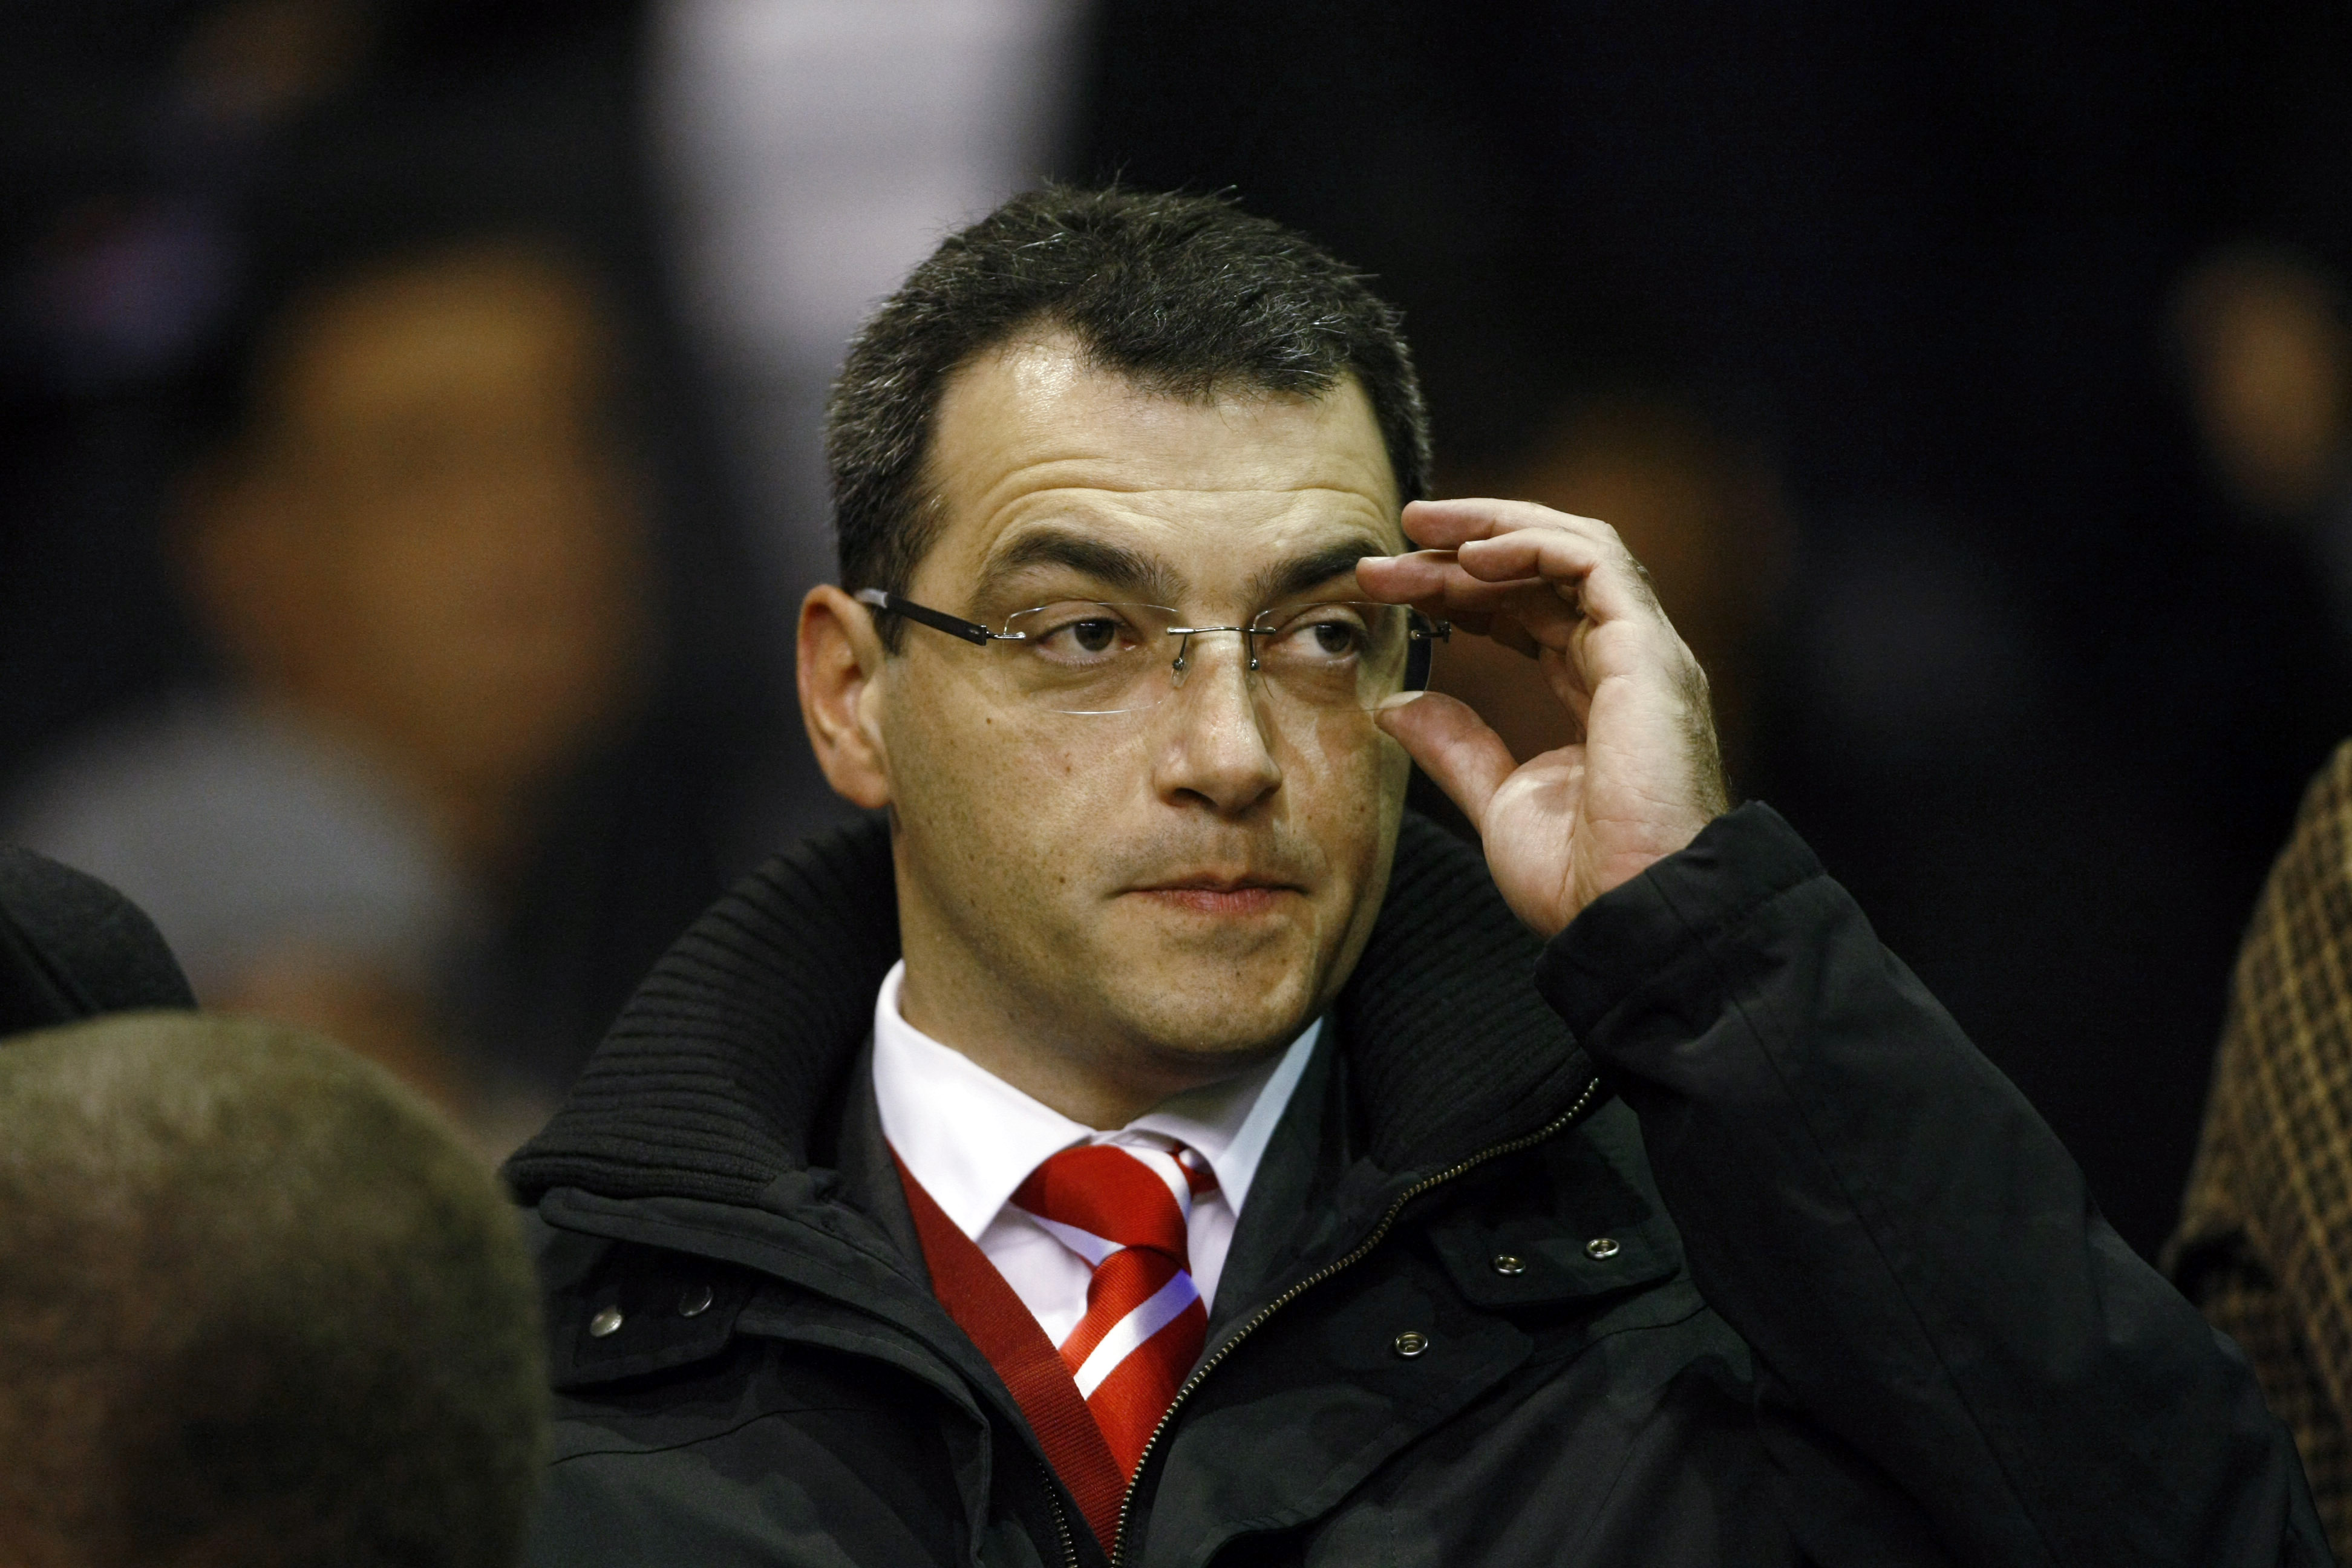 Liverpools nye sportchef, Damien Comolli, är helnöjd över att man blev av med Torres.